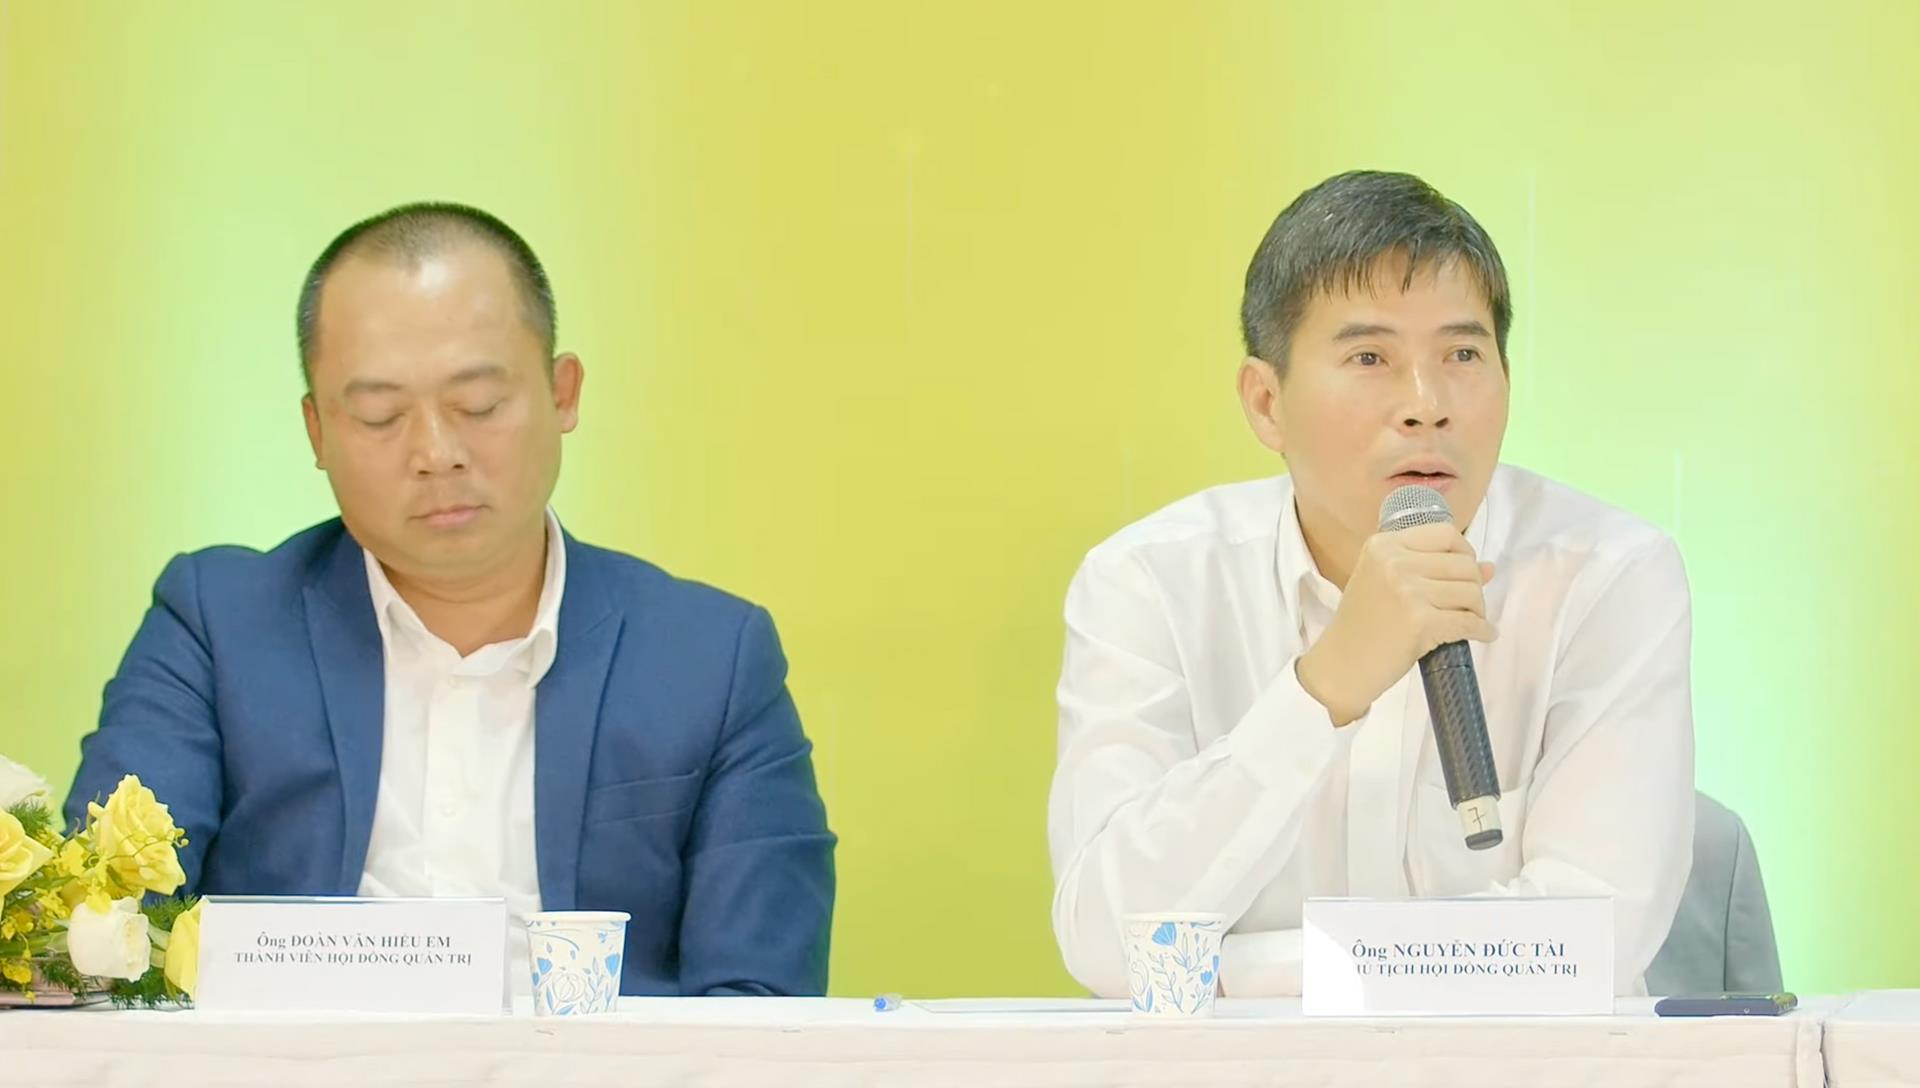 Chủ tịch MWG Nguyễn Đức Tài nói về Bách Hoá Xanh: Hàng tươi chưa hoàn hảo, còn hàng khô và hàng tiêu dùng chúng tôi tự tin đã thành công - Ảnh 1.